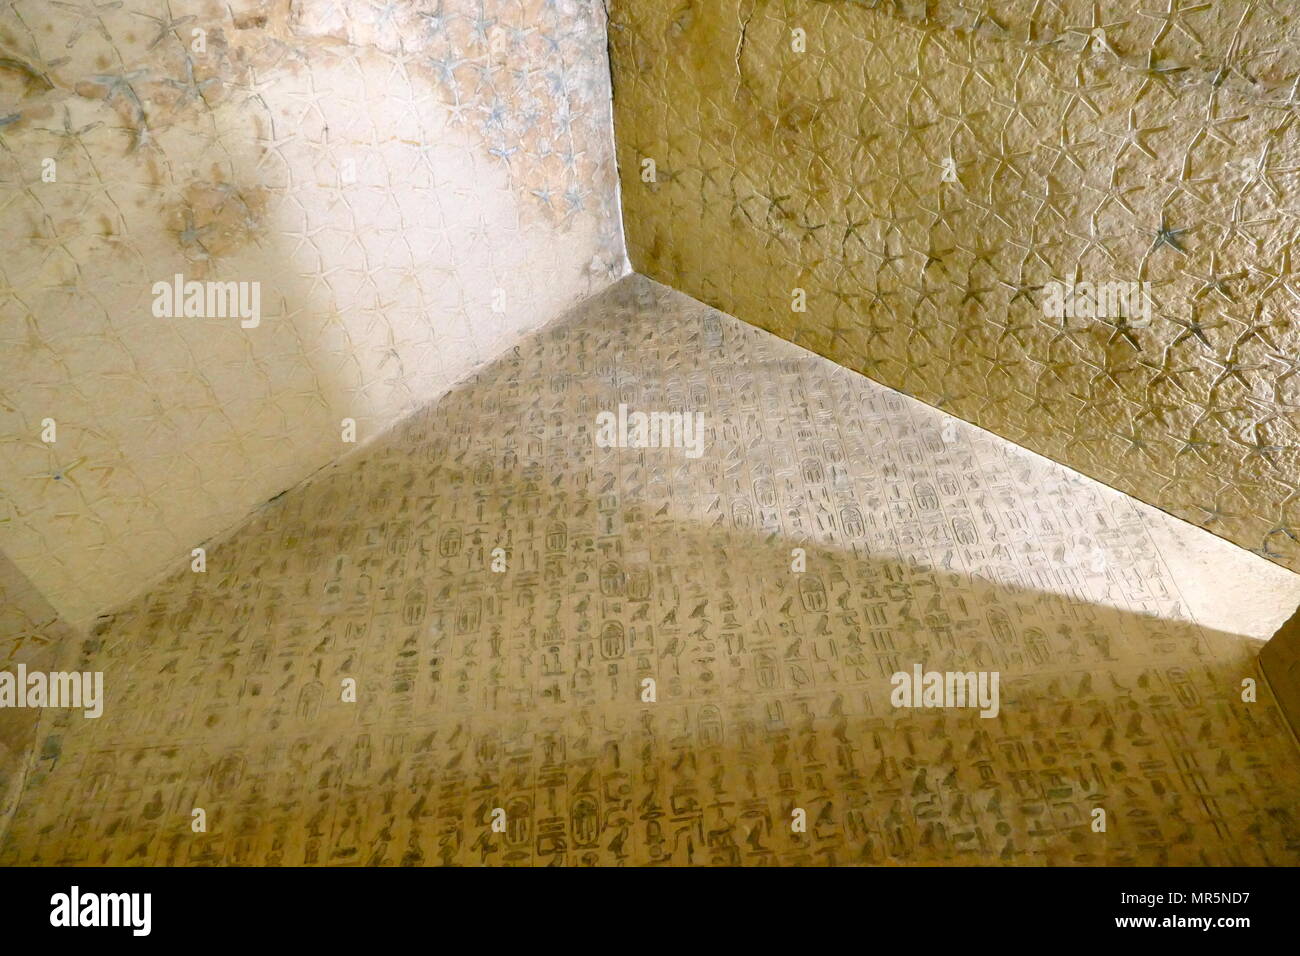 Los relieves en el interior del complejo de la pirámide de las anus, en Saqqara, cerca de El Cairo en Egipto. Fue construida por el faraón anus, el noveno y último rey de la quinta dinastía a mediados de los años 24 siglo A.C. la pirámide de anus es el primero en tener los textos en las paredes de las cámaras funerarias. Los hechizos de estos textos Pirámide fueron pensadas para ser útiles al rey muerto en el más allá; algunos fueron recitados durante sus ceremonias fúnebres. Los jeroglíficos en las anus' pirámide son Incisa in fine hundido socorro y pintada de azul, mientras que el techo del sarcófago cámara se cubre con estrellas Foto de stock